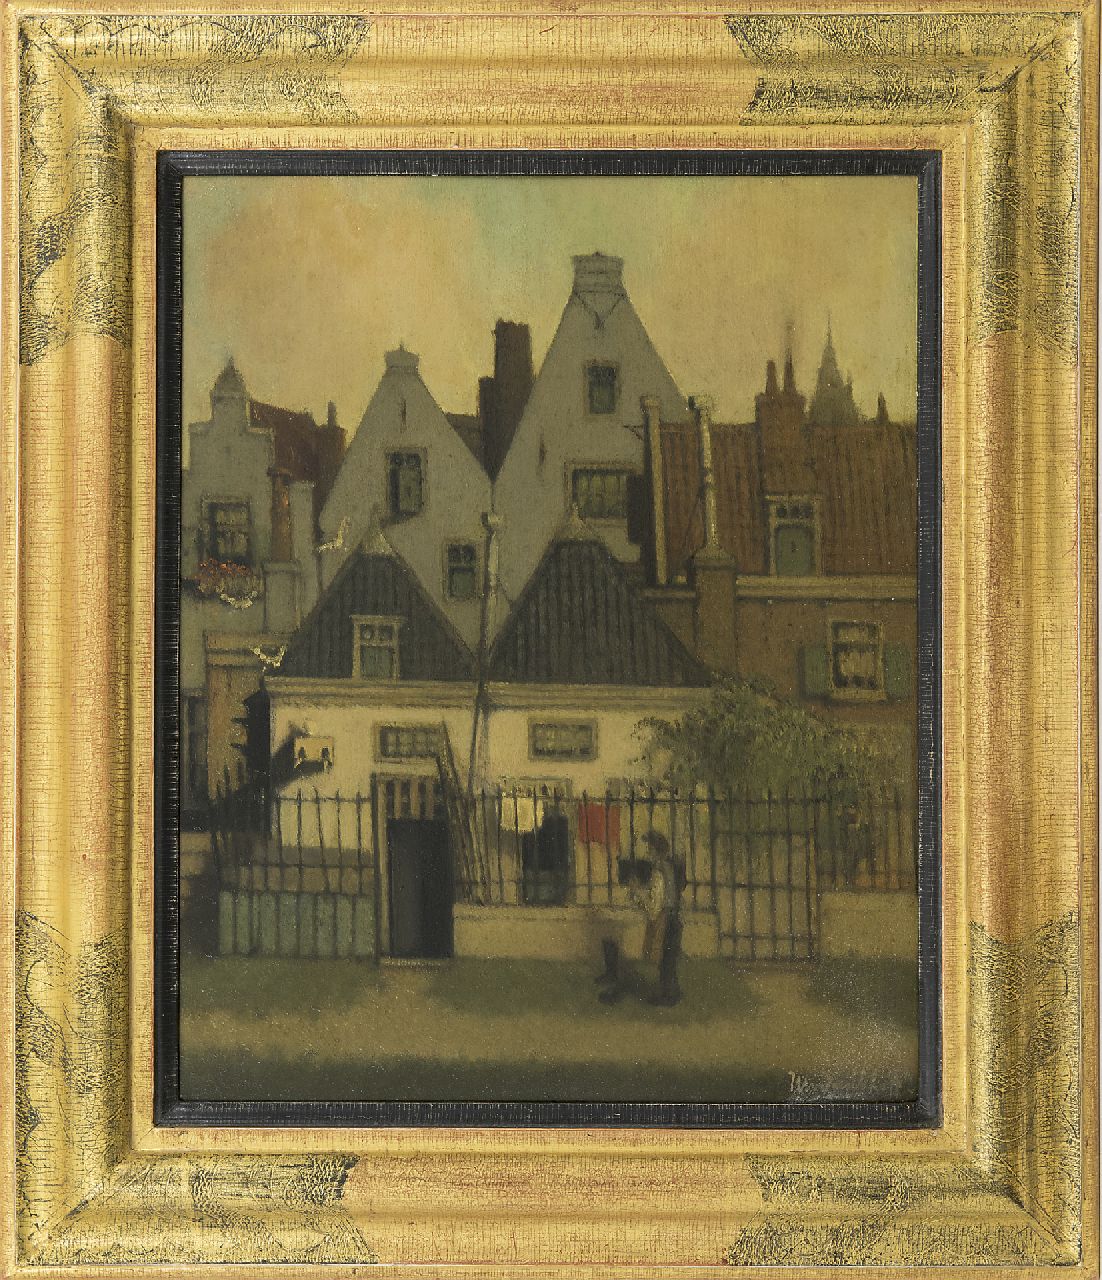 Daalhoff H.A. van | Hermanus Antonius 'Henri' van Daalhoff | Paintings offered for sale | A town view, oil on panel 40.3 x 32.1 cm, signed l.r.